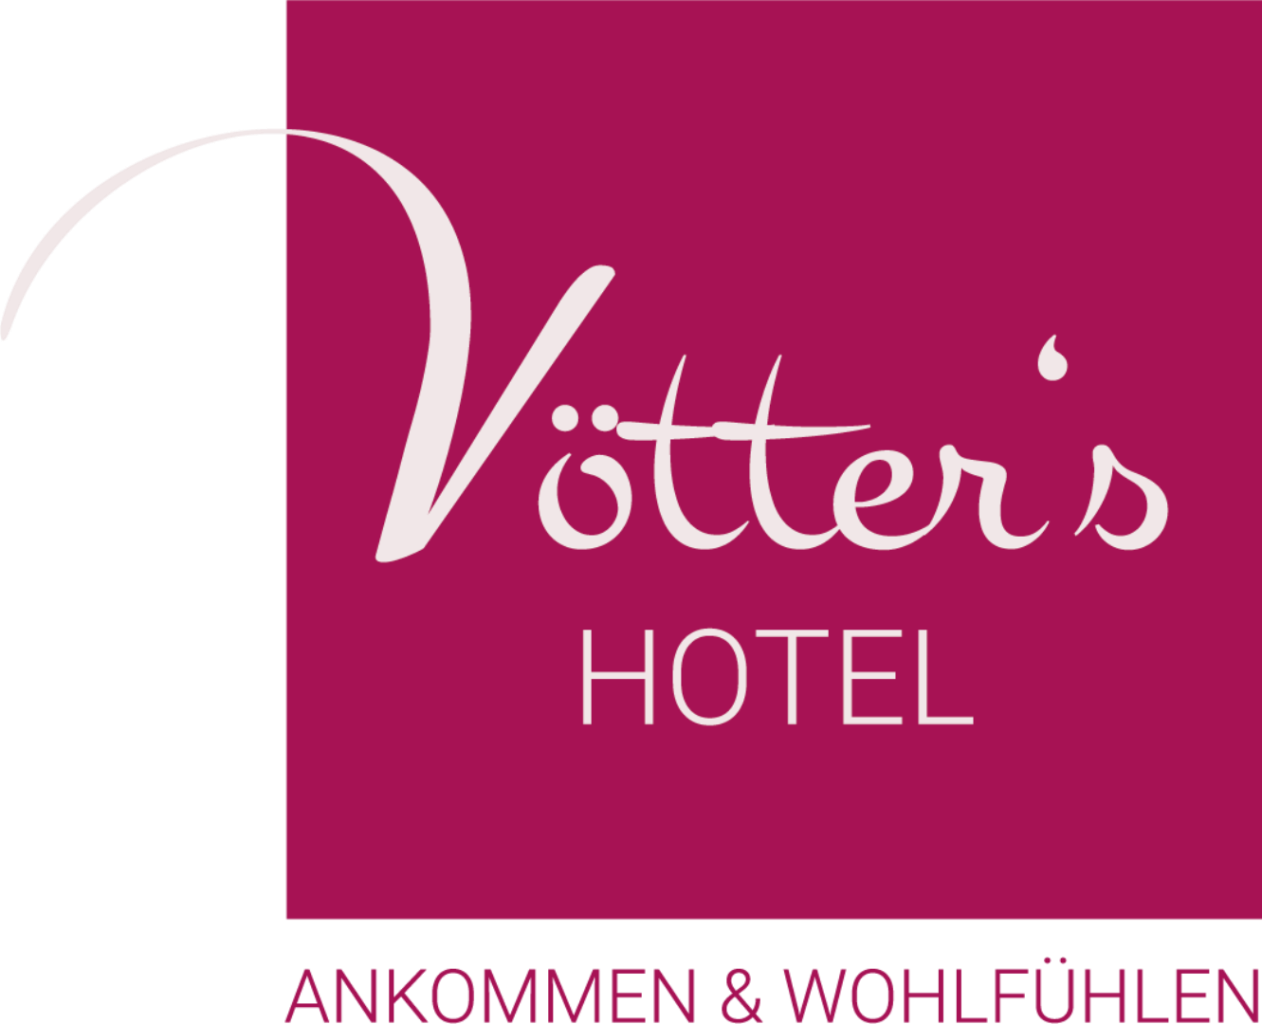 Vötter's Hotel